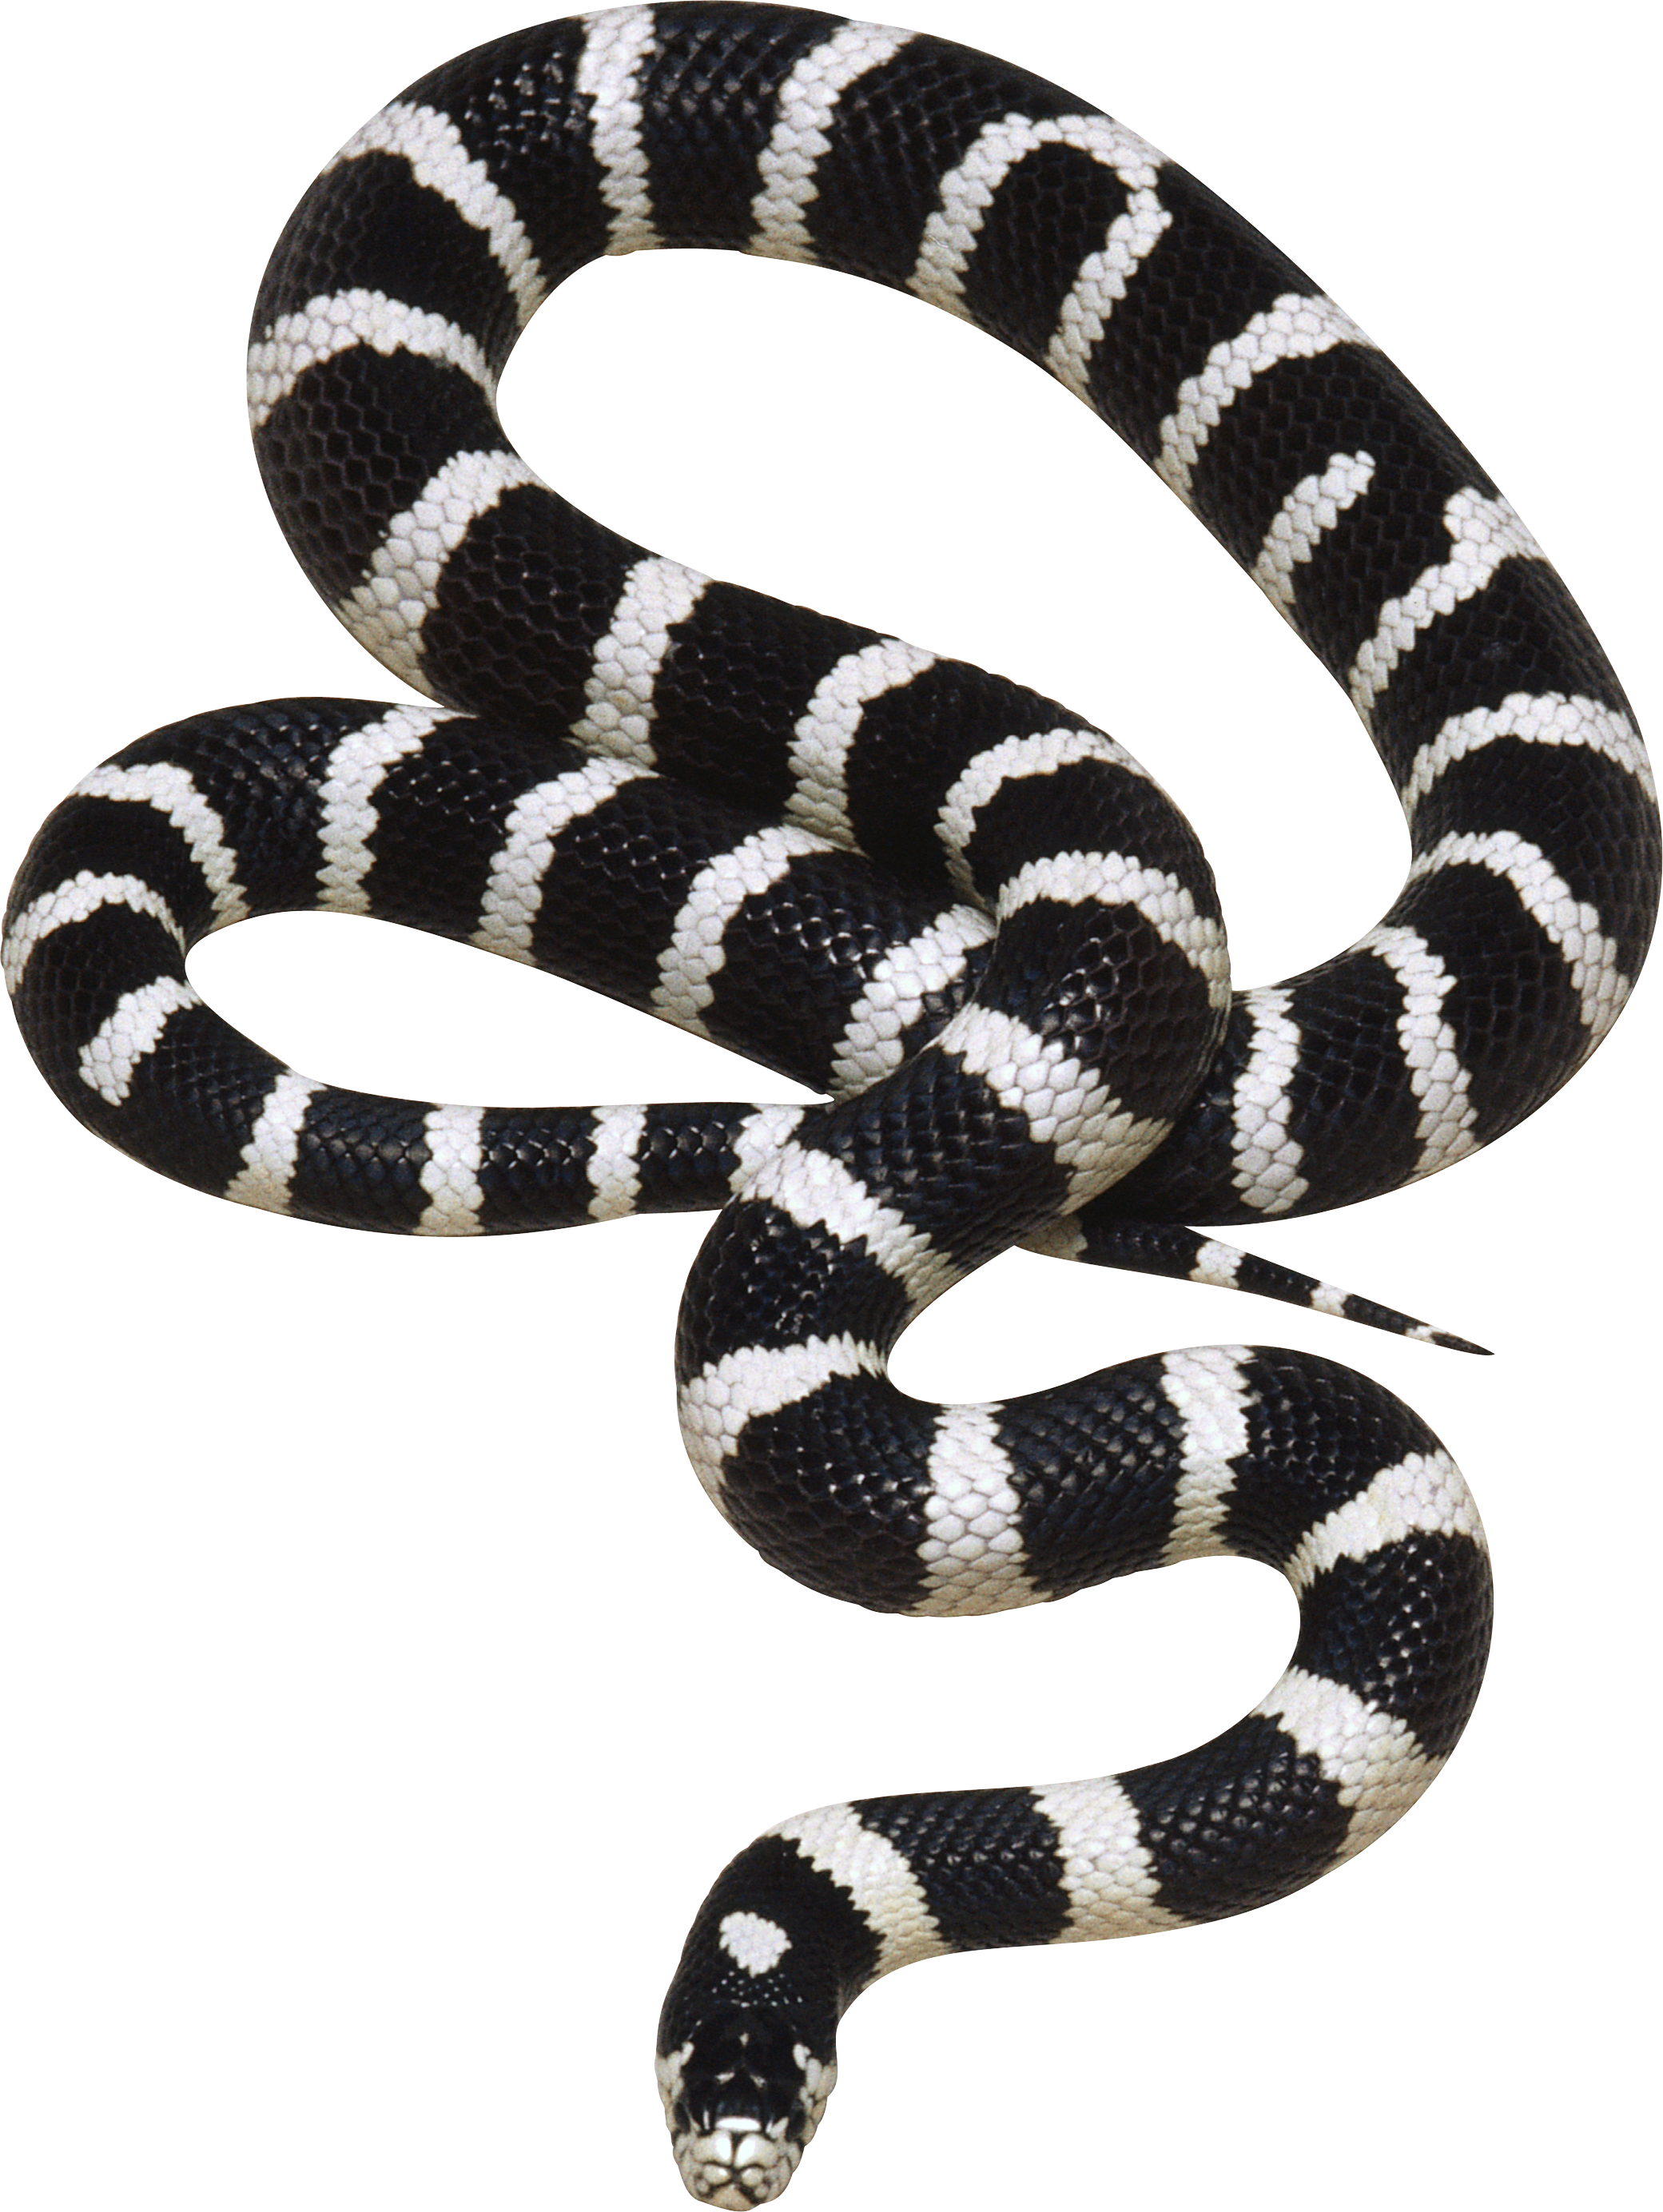 Venimeux Serpent Transparentes Image